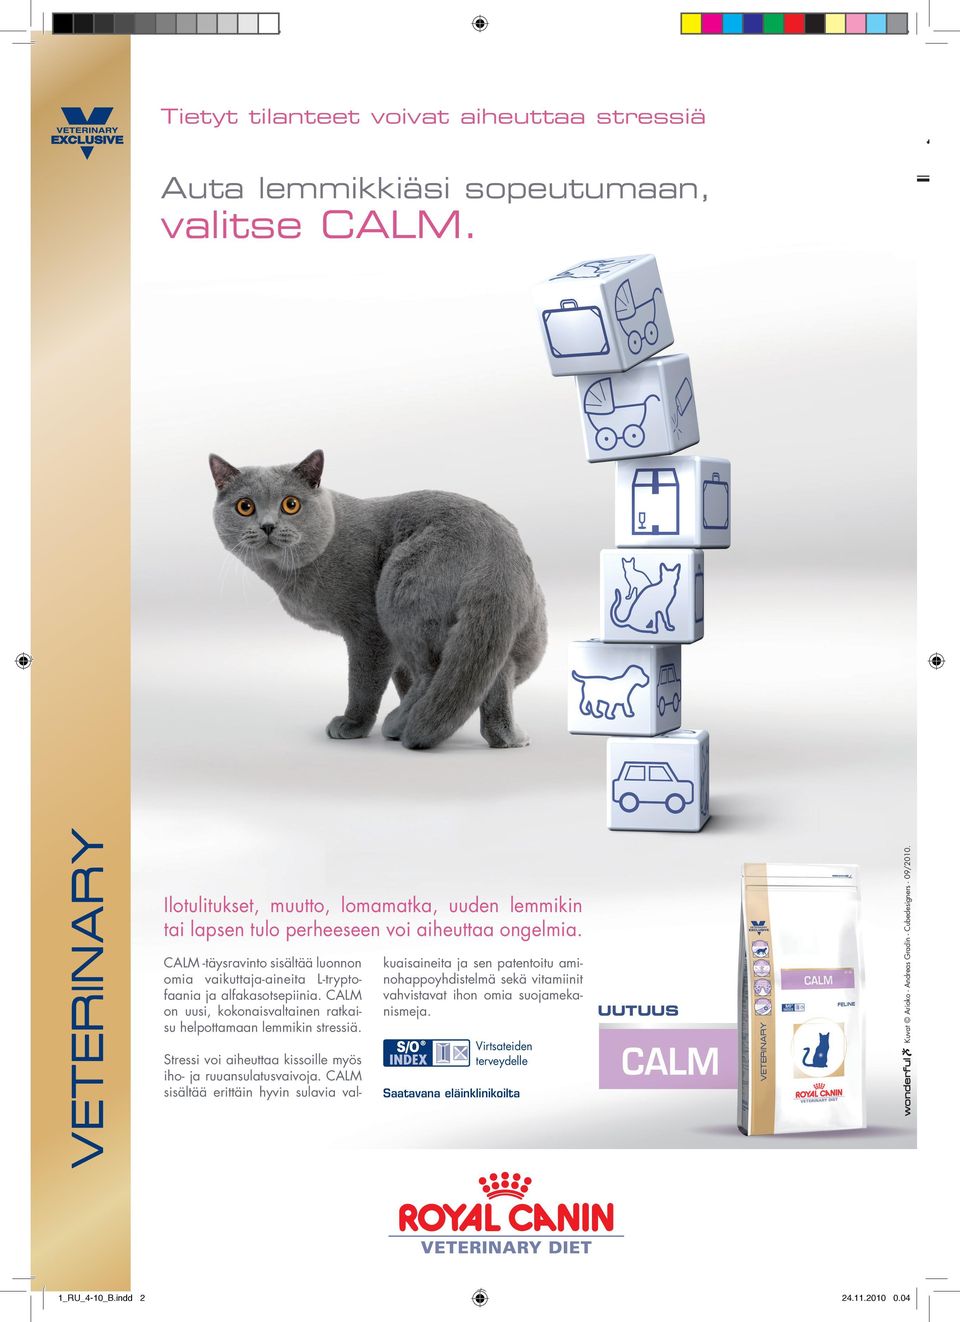 Stressi voi aiheuttaa kissoille myös iho- ja ruuansulatusvaivoja. CALM sisältää erittäin hyvin sulavia val- RC_Calm_kissa_A4.indd 1_RU_4-10_B.